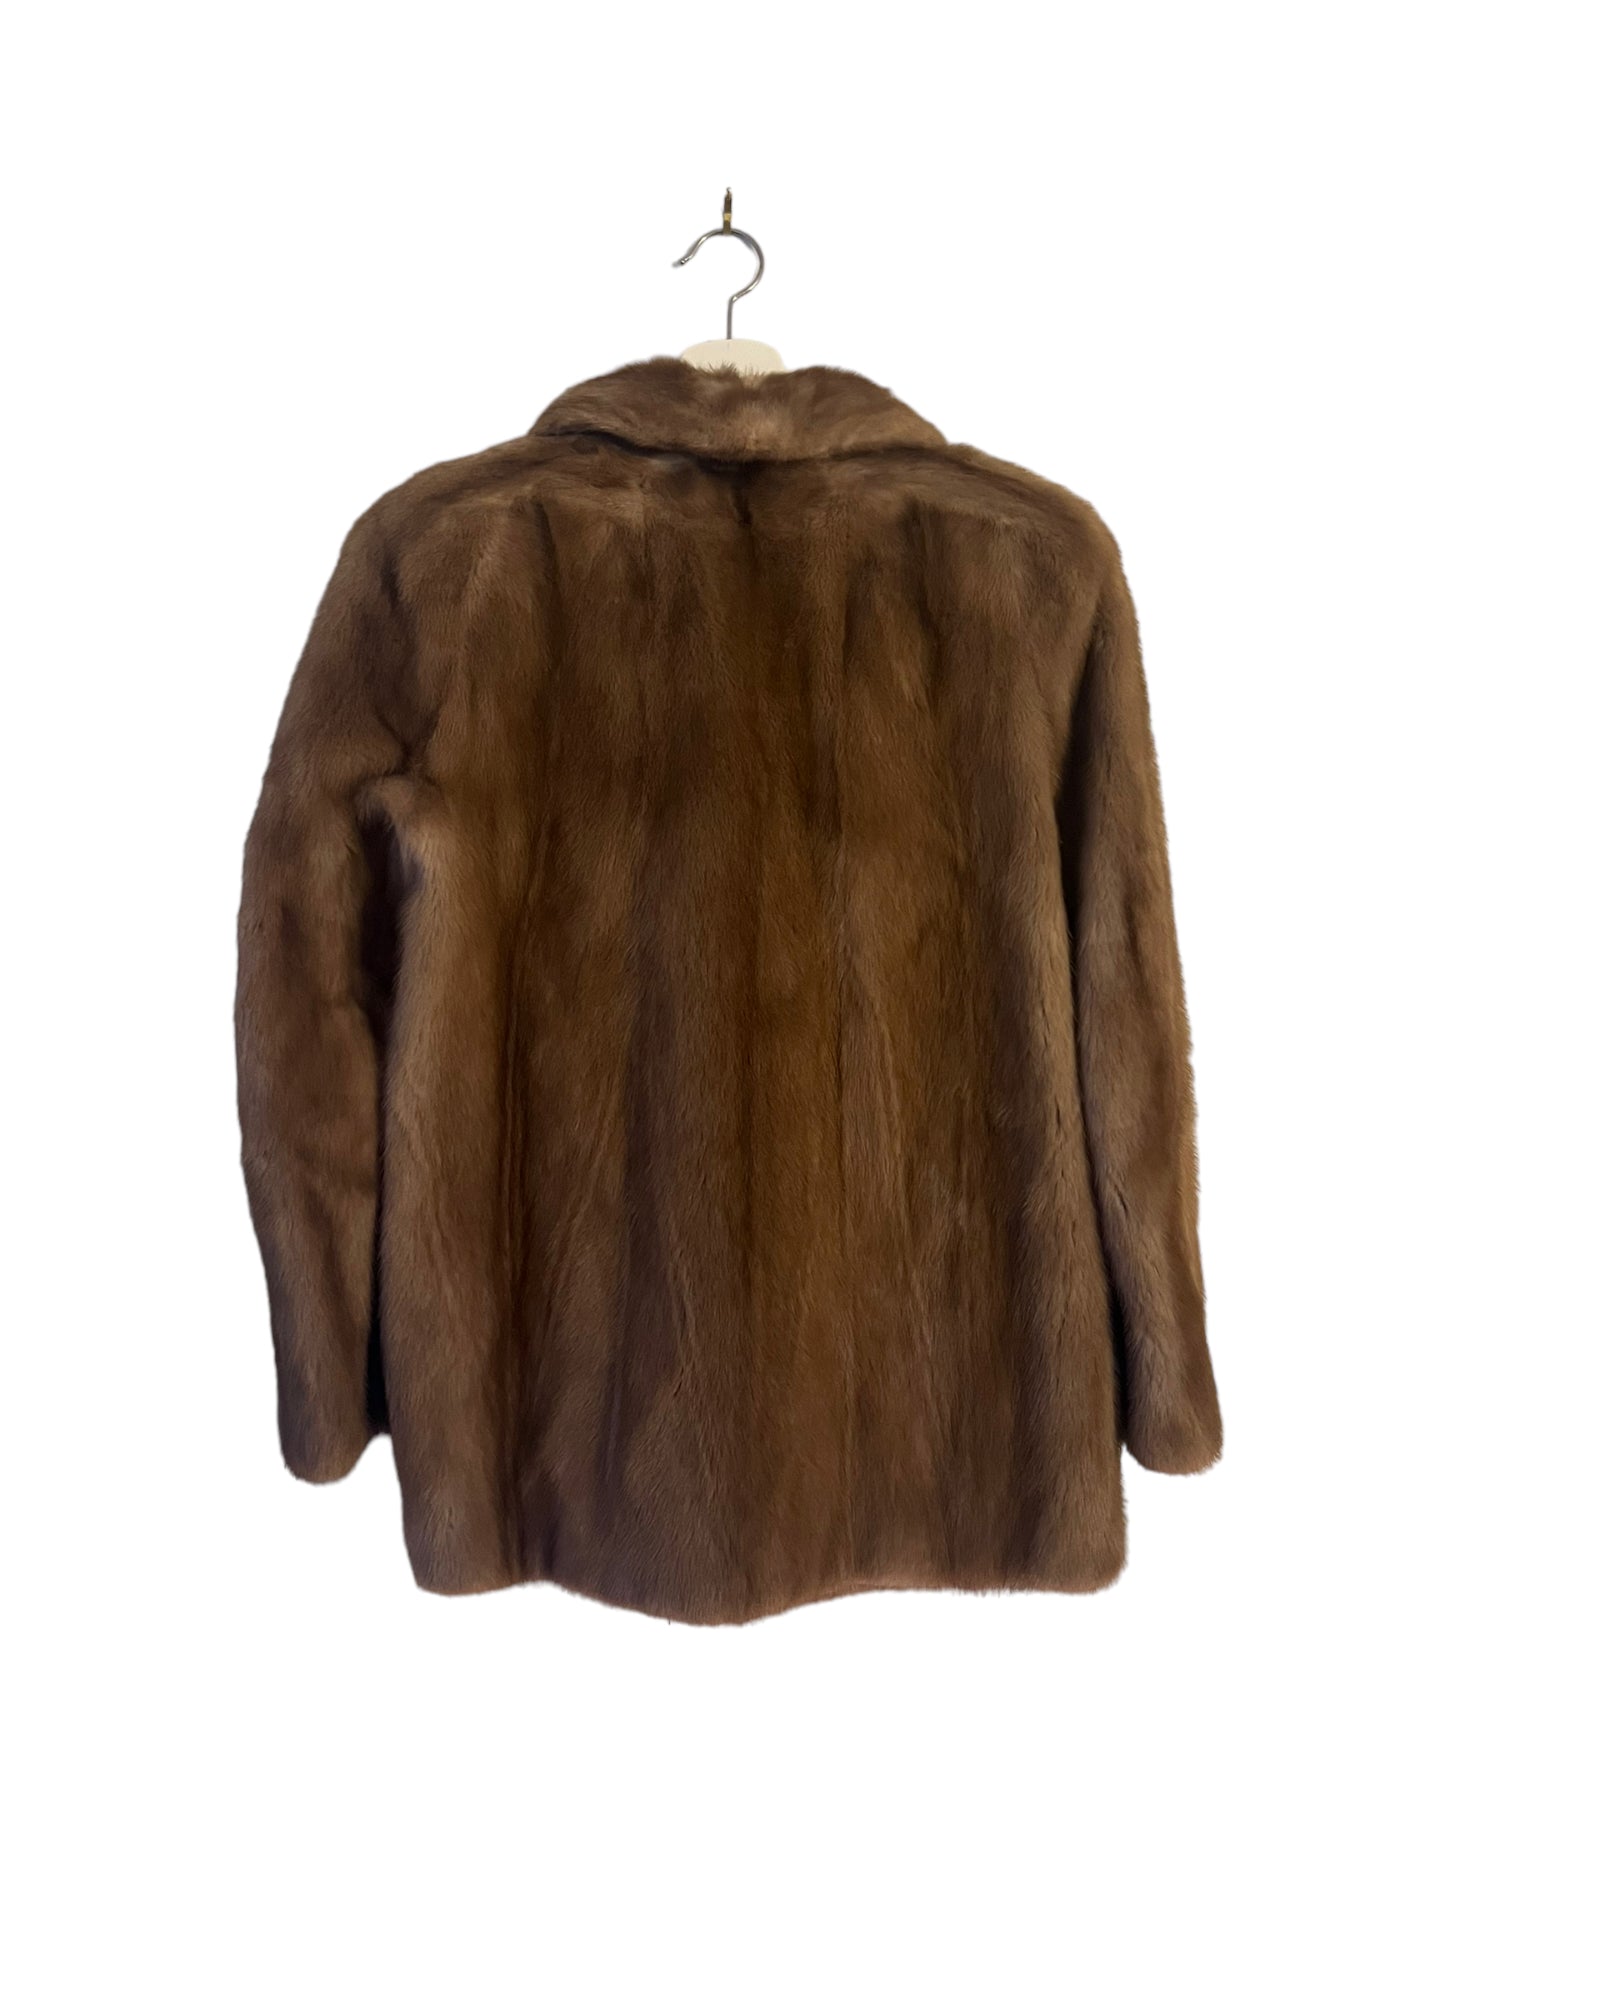 Mink fur jacket blazer light color - vintage